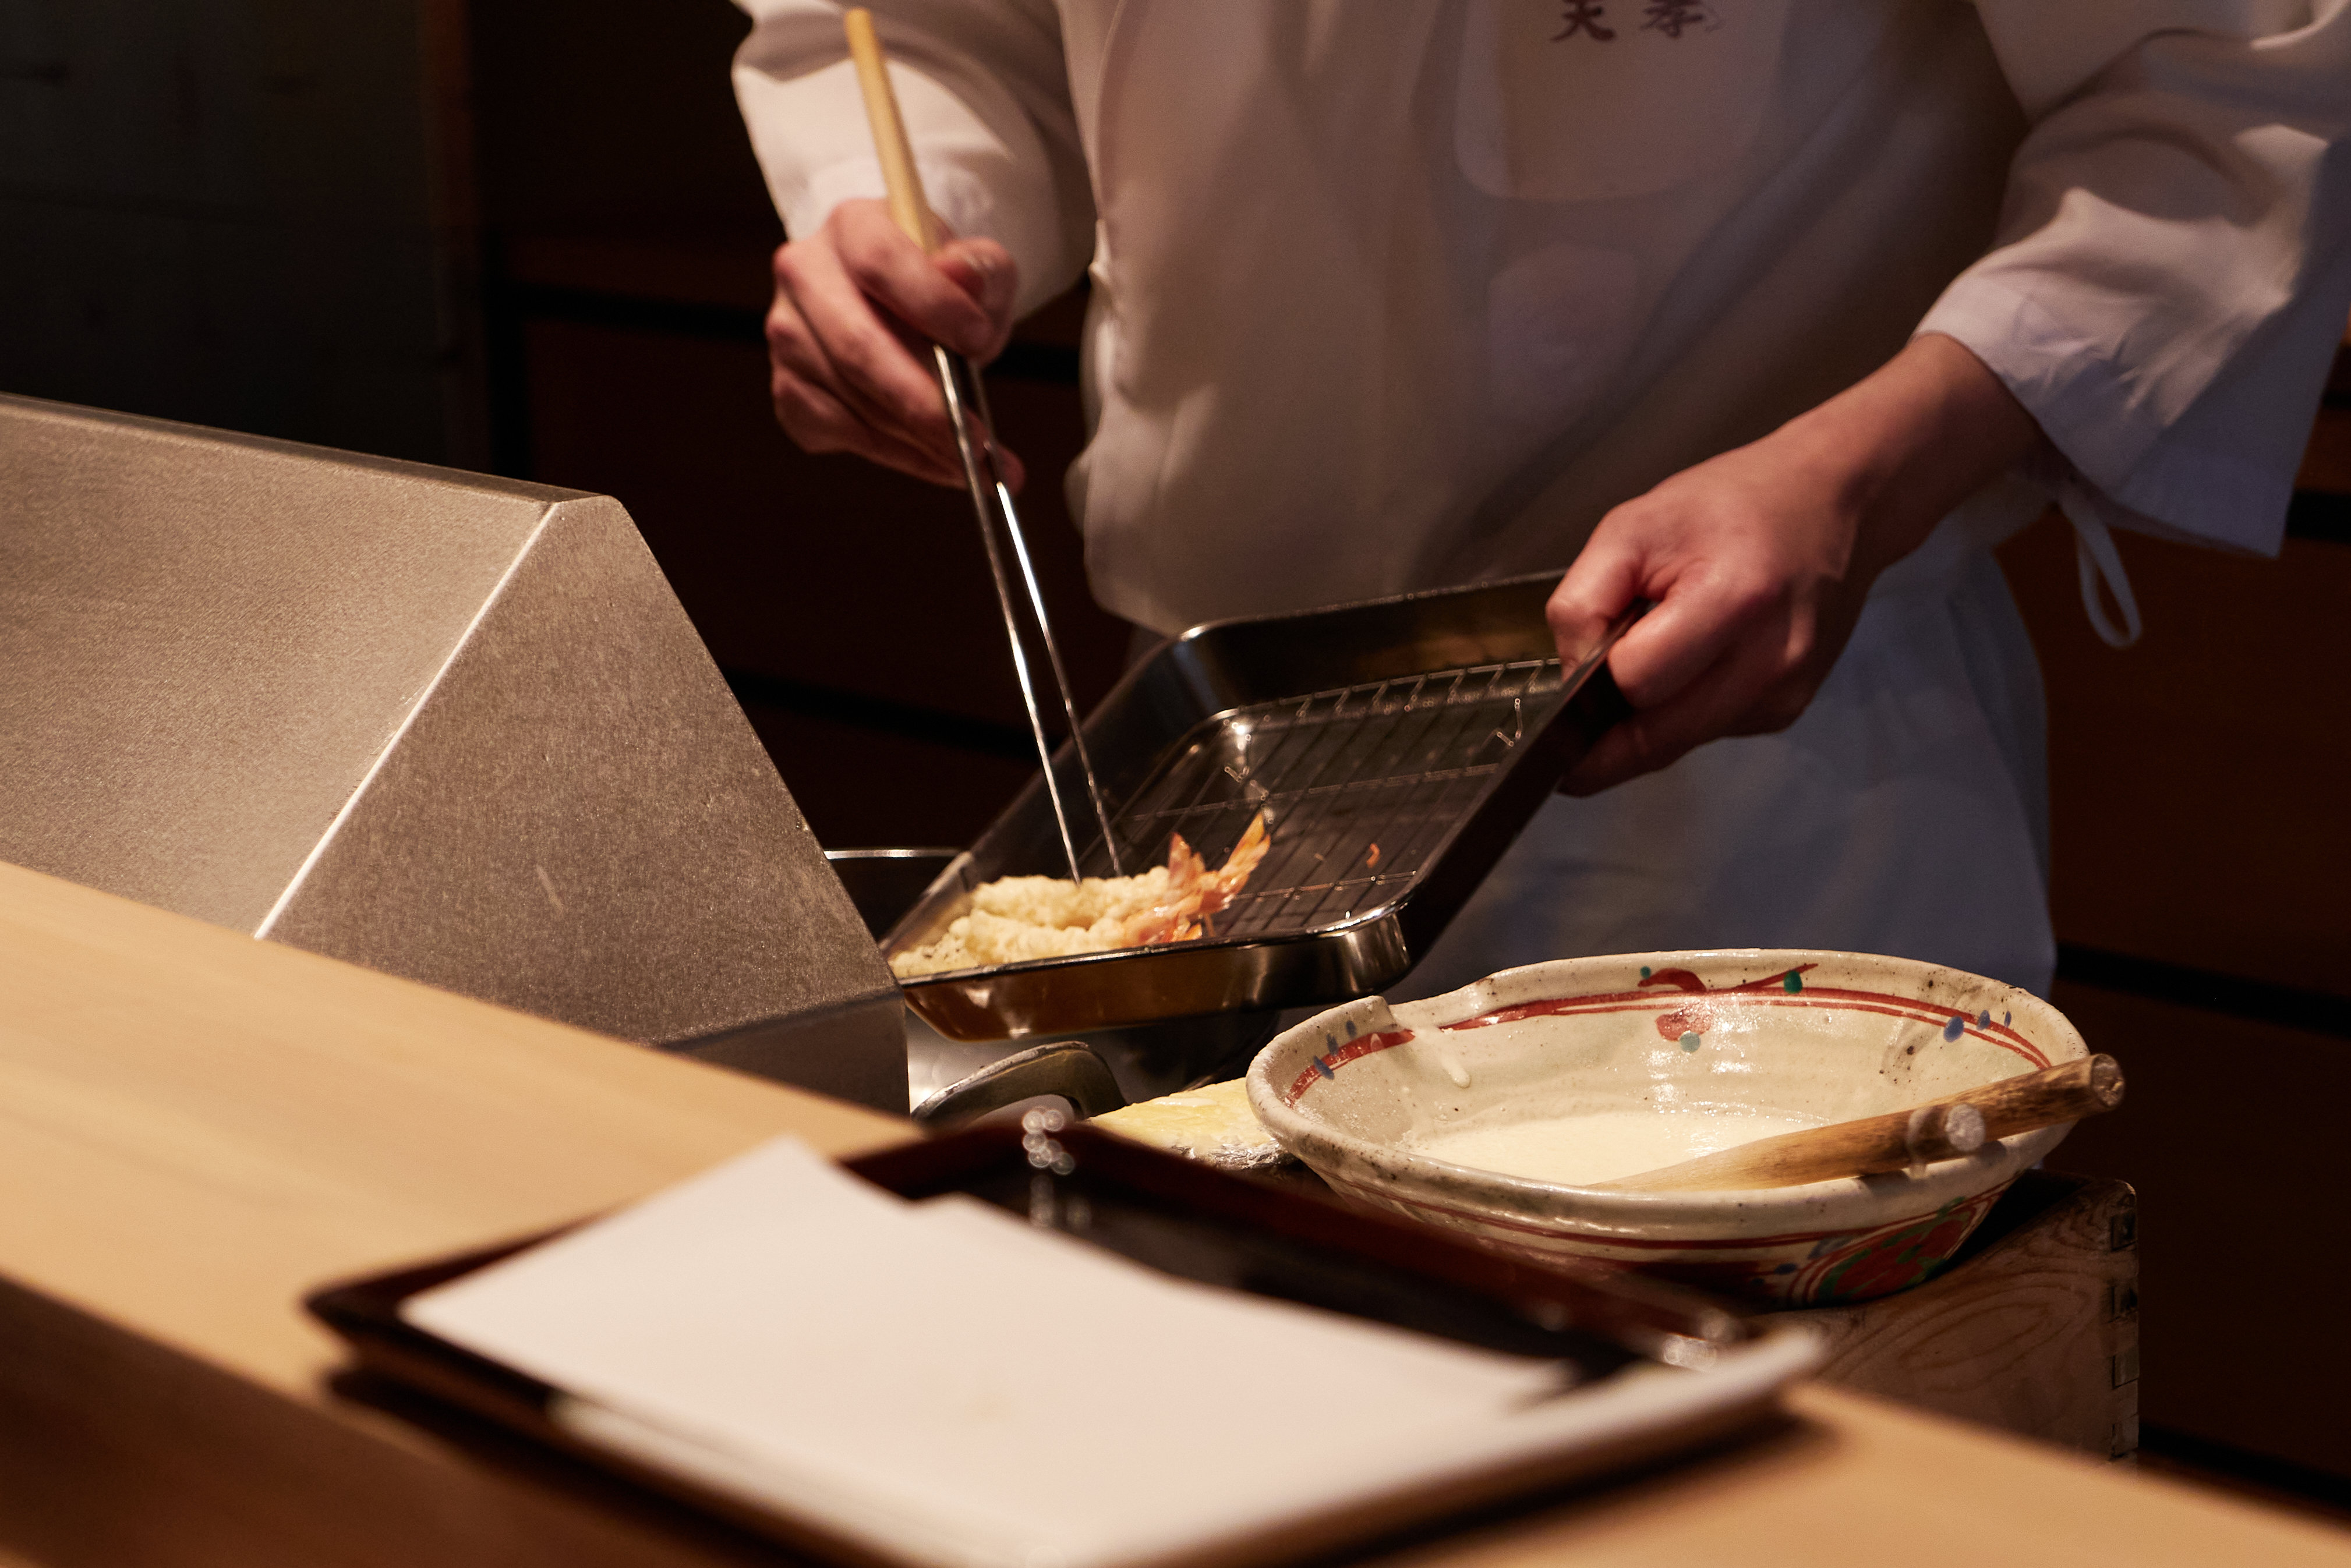 미슐랭 1스타를 받은 일본 후쿠오카 덴푸라 오마카세 ‘덴코’에서 요리사가 덴푸라를 정성스럽게 만드는 모습. 주로 계절에 따라 제철 재료 본연의 맛을 살리는 방식으로 요리한다.